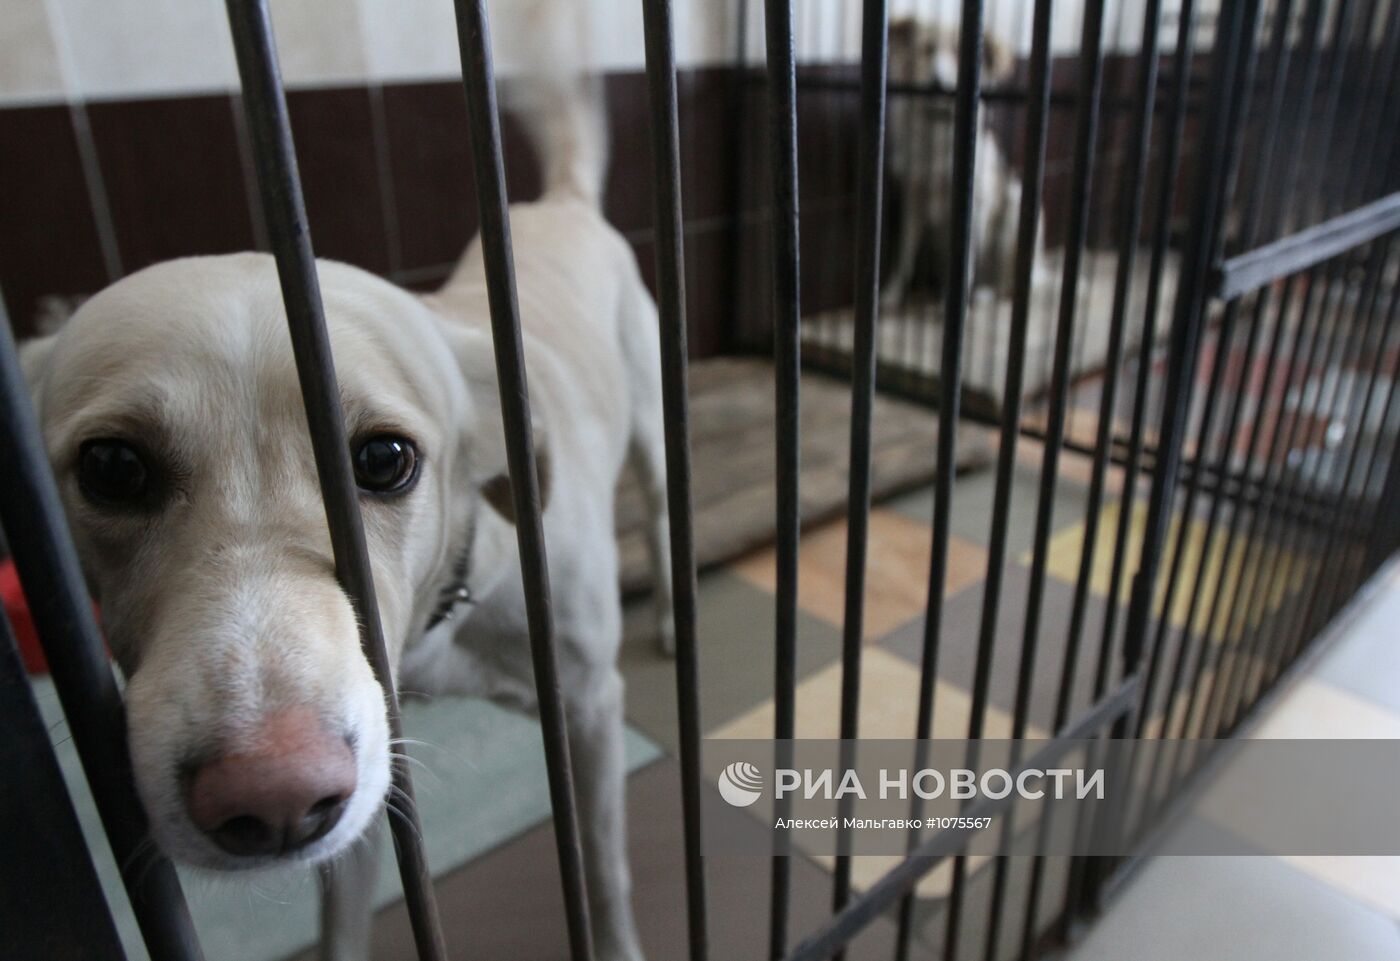 Работа приюта для собак "Друг" в Омске